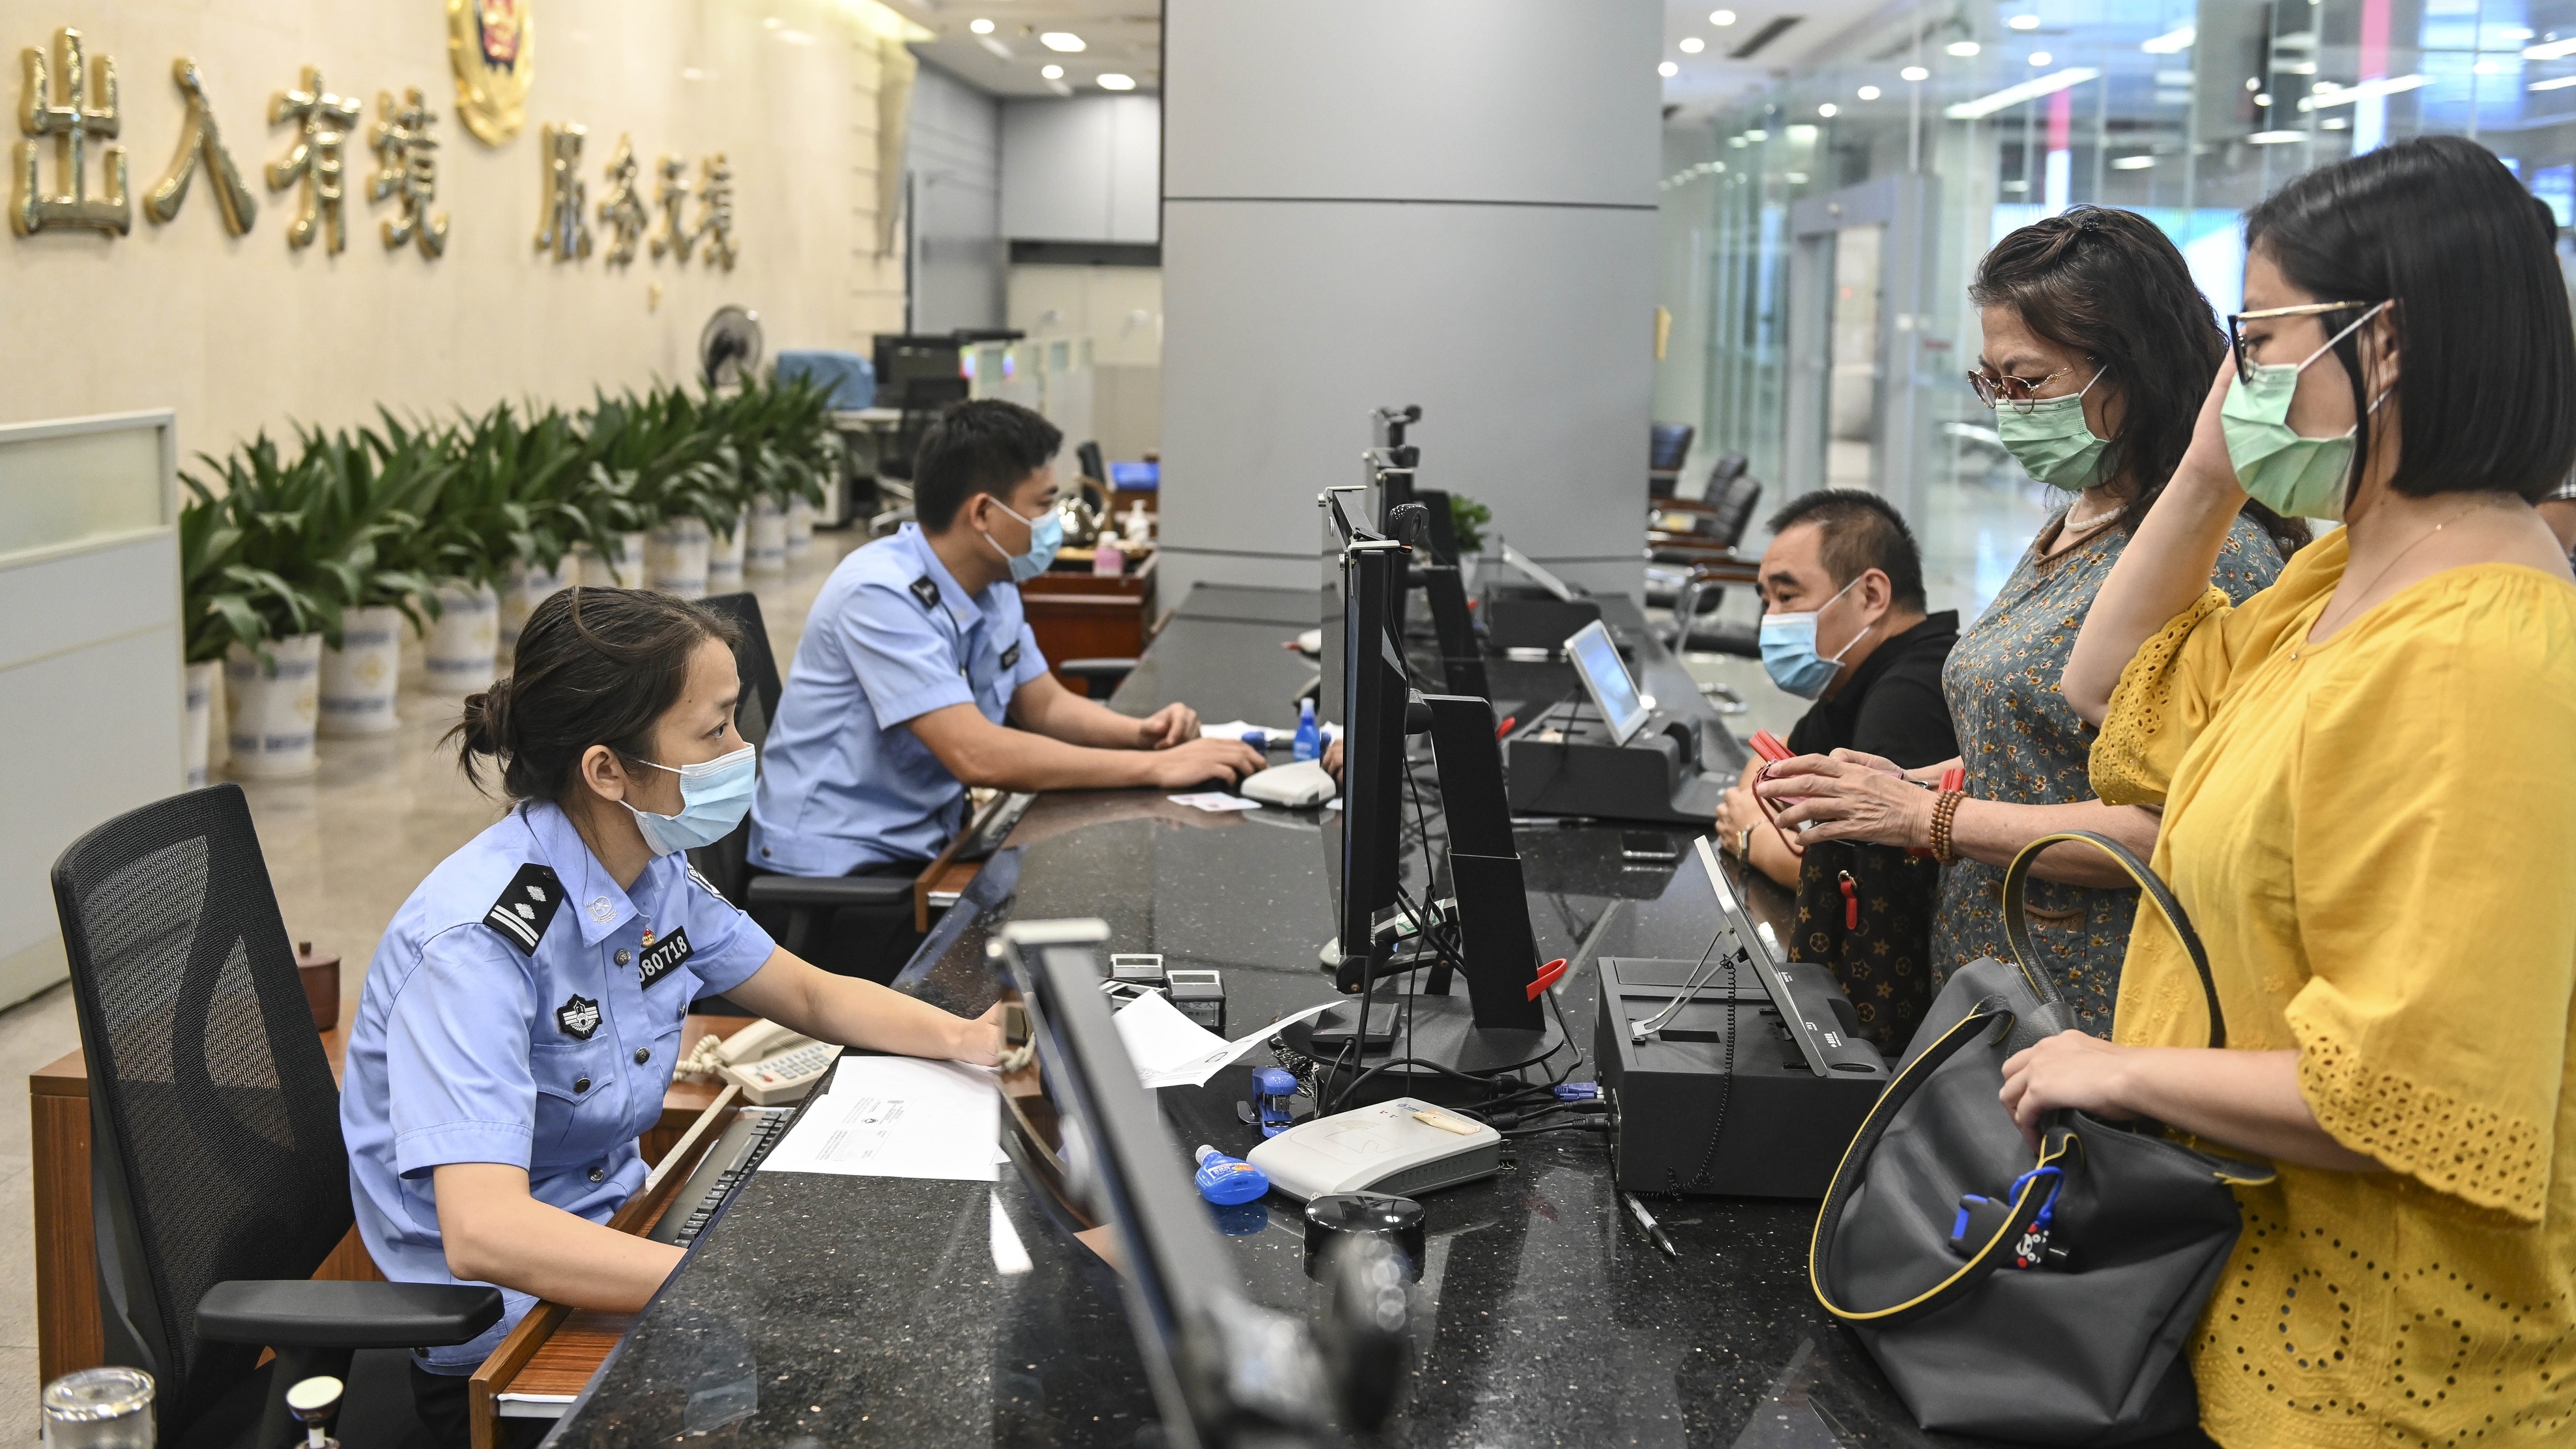 公安部 採取措施制止餐飲浪費嚴控 三公 落實節水節電節油 香港01 即時中國